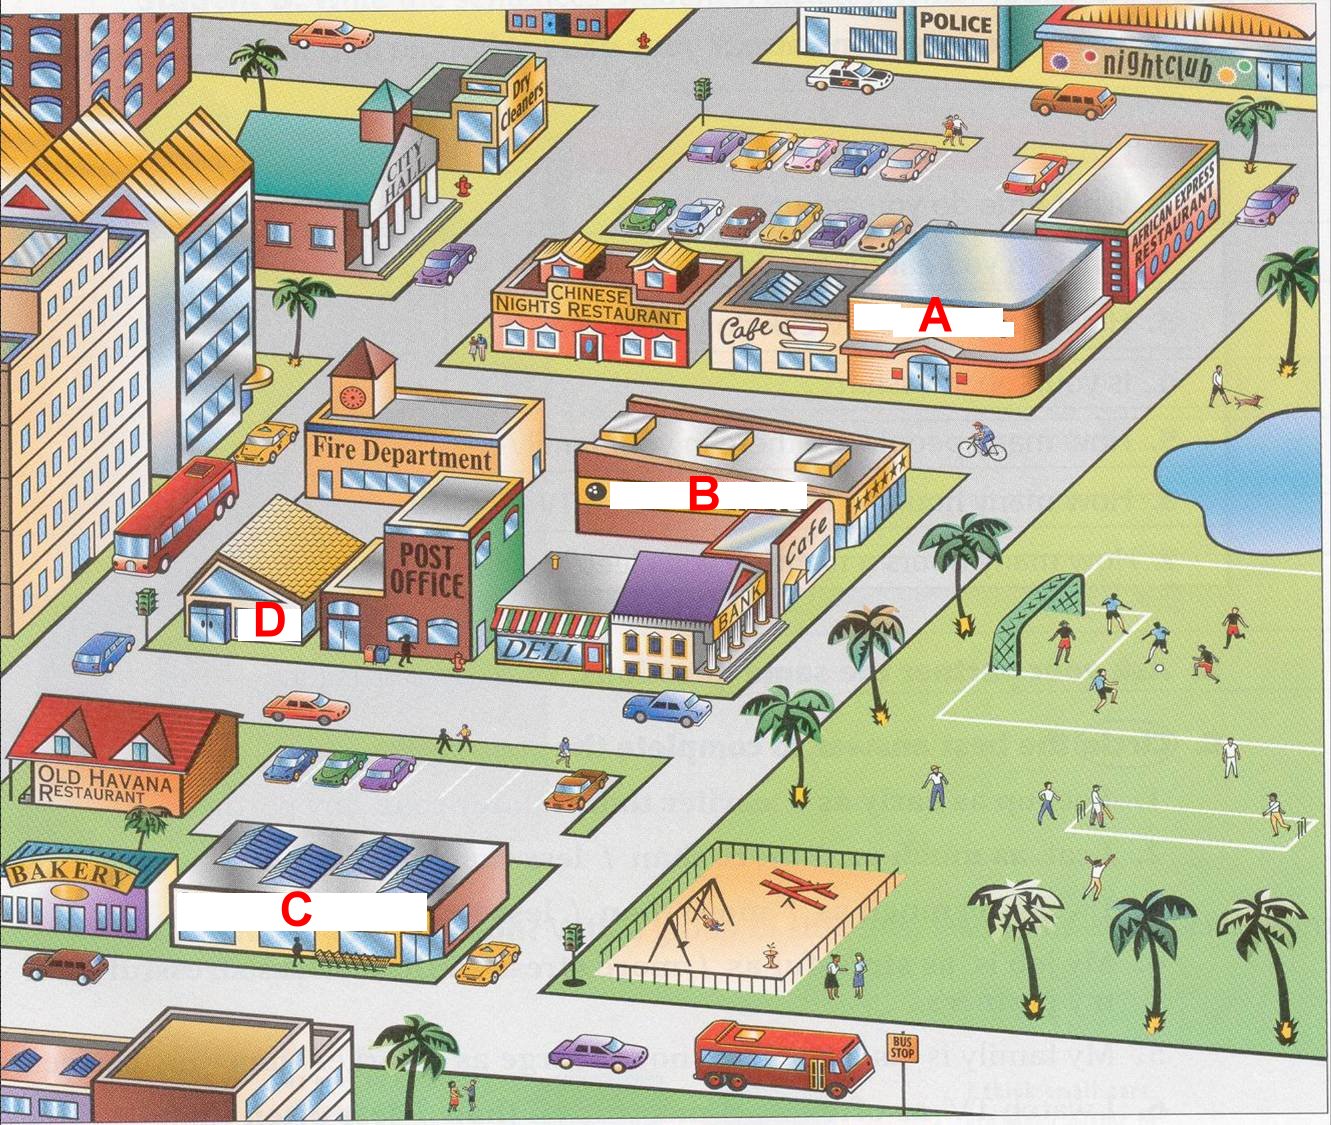 This part of town. Изображение города для детей. План города для детей. Картинка города для описания. План города на английском.